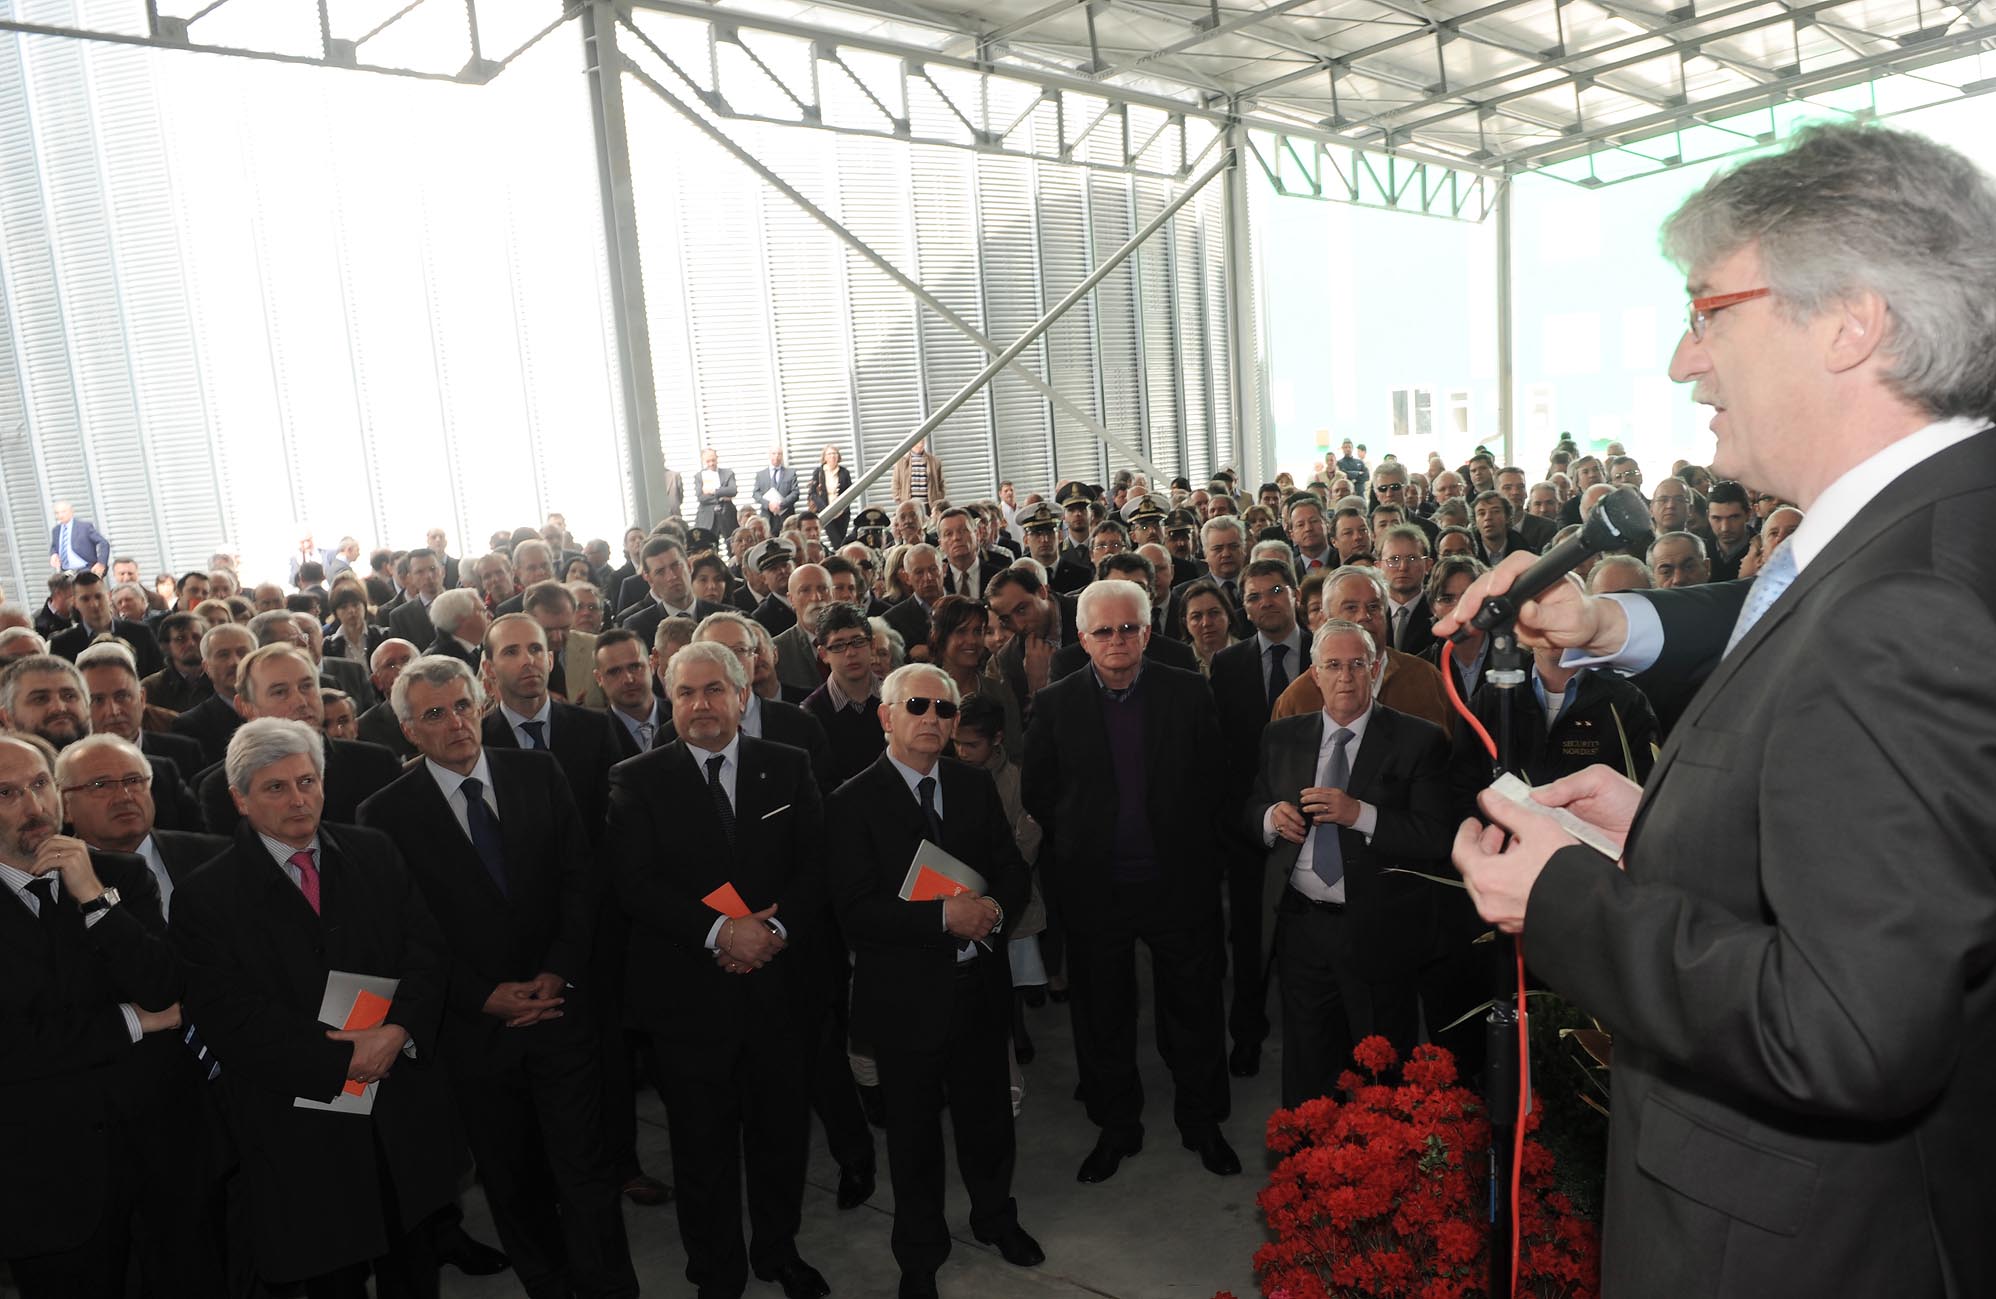 Renzo Tondo (presidente Friuli Venezia Giulia) durante il suo intervento all’inaugurazione del nujovo Oleificio San Giorgio nella zona industriale dell’Aussa Corno. (S.Giorgio di Nogaro, 24/04/10)